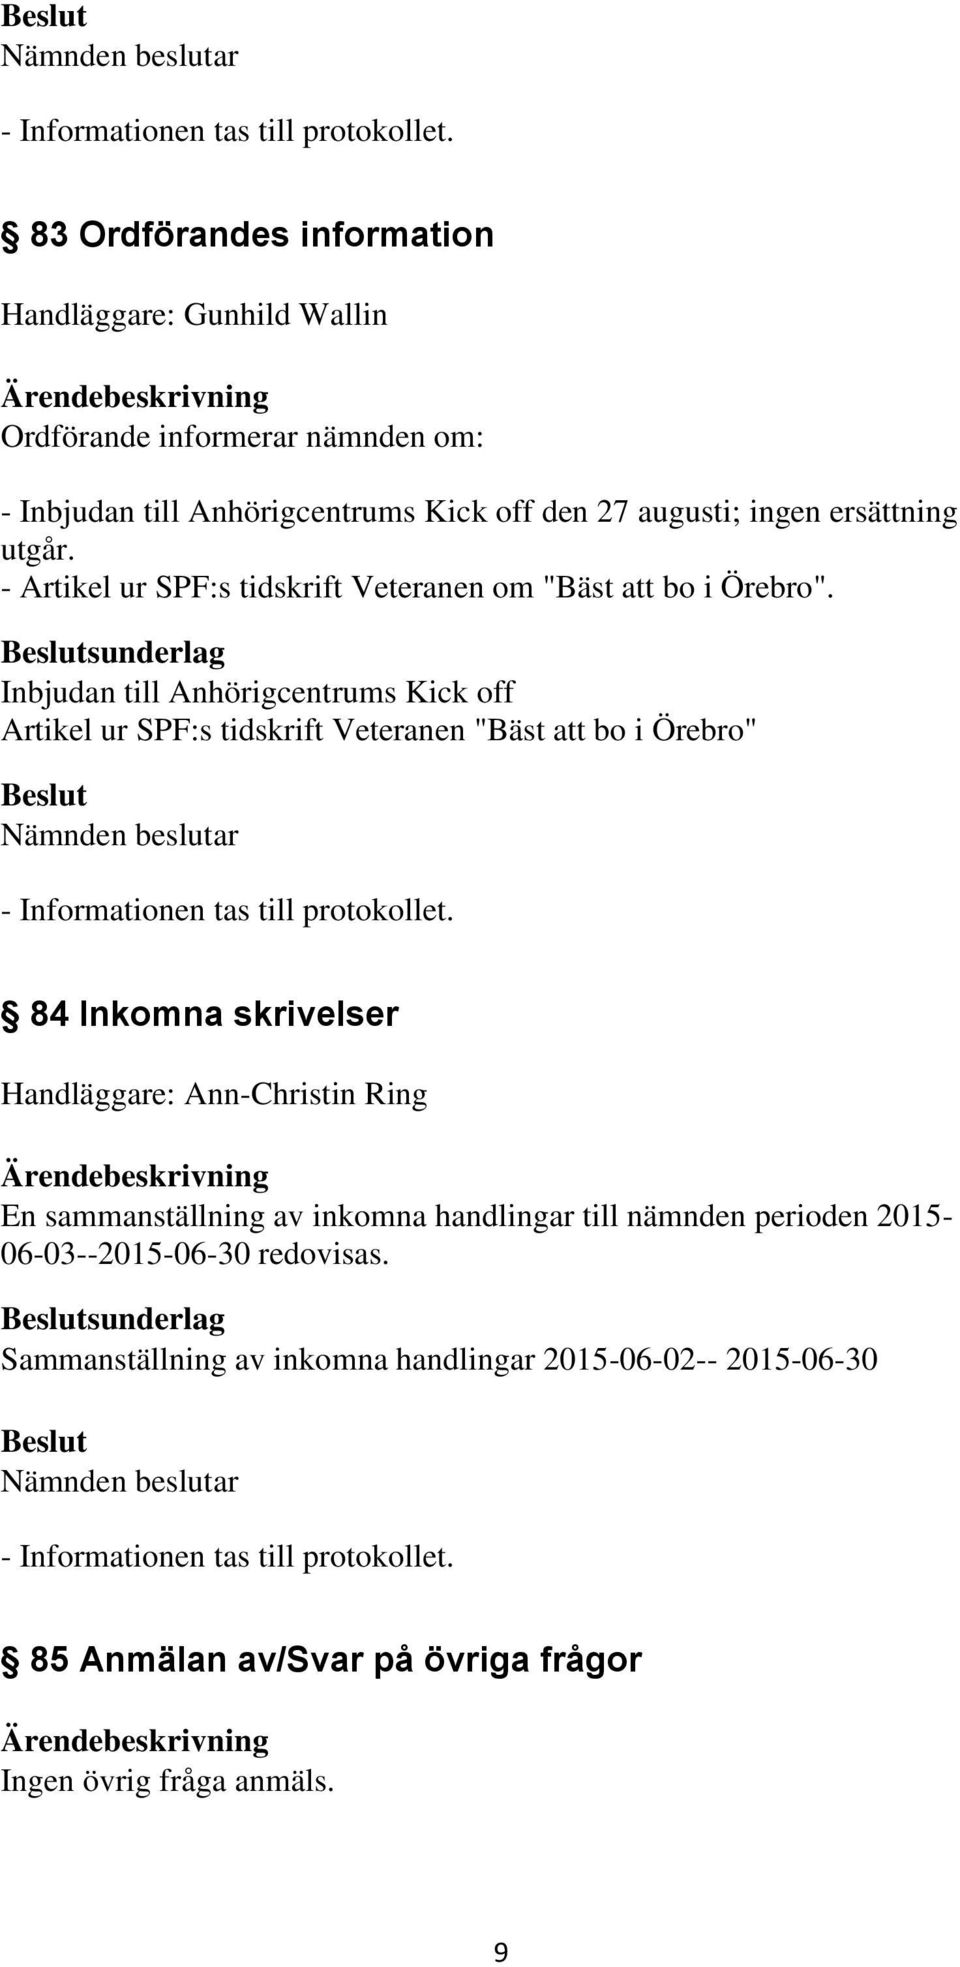 sunderlag Inbjudan till Anhörigcentrums Kick off Artikel ur SPF:s tidskrift Veteranen "Bäst att bo i Örebro" 84 Inkomna skrivelser Handläggare: Ann-Christin